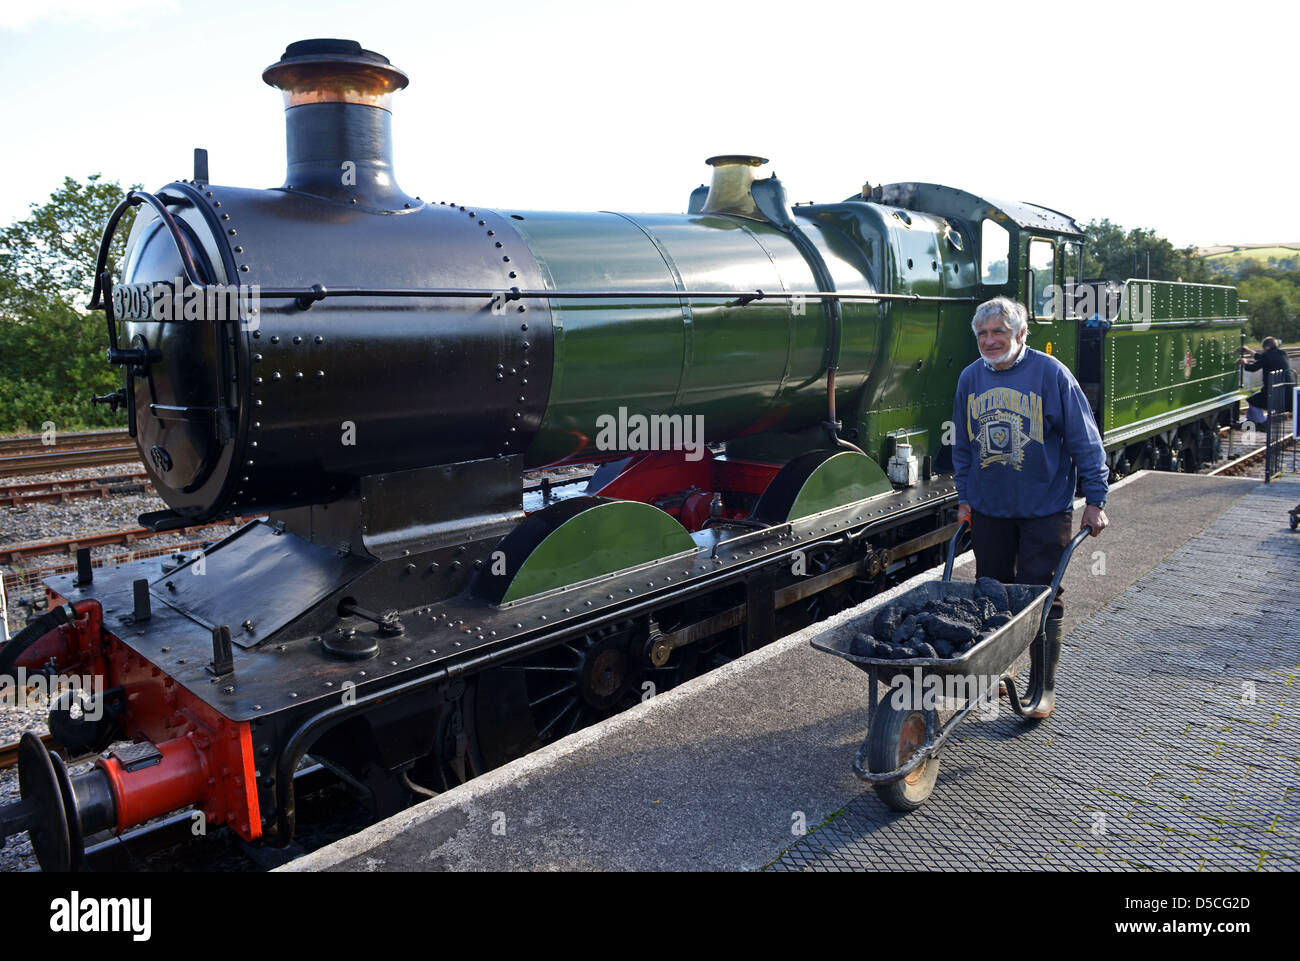 La station de train à vapeur à Totnes, Devon, Angleterre, Royaume-Uni Banque D'Images